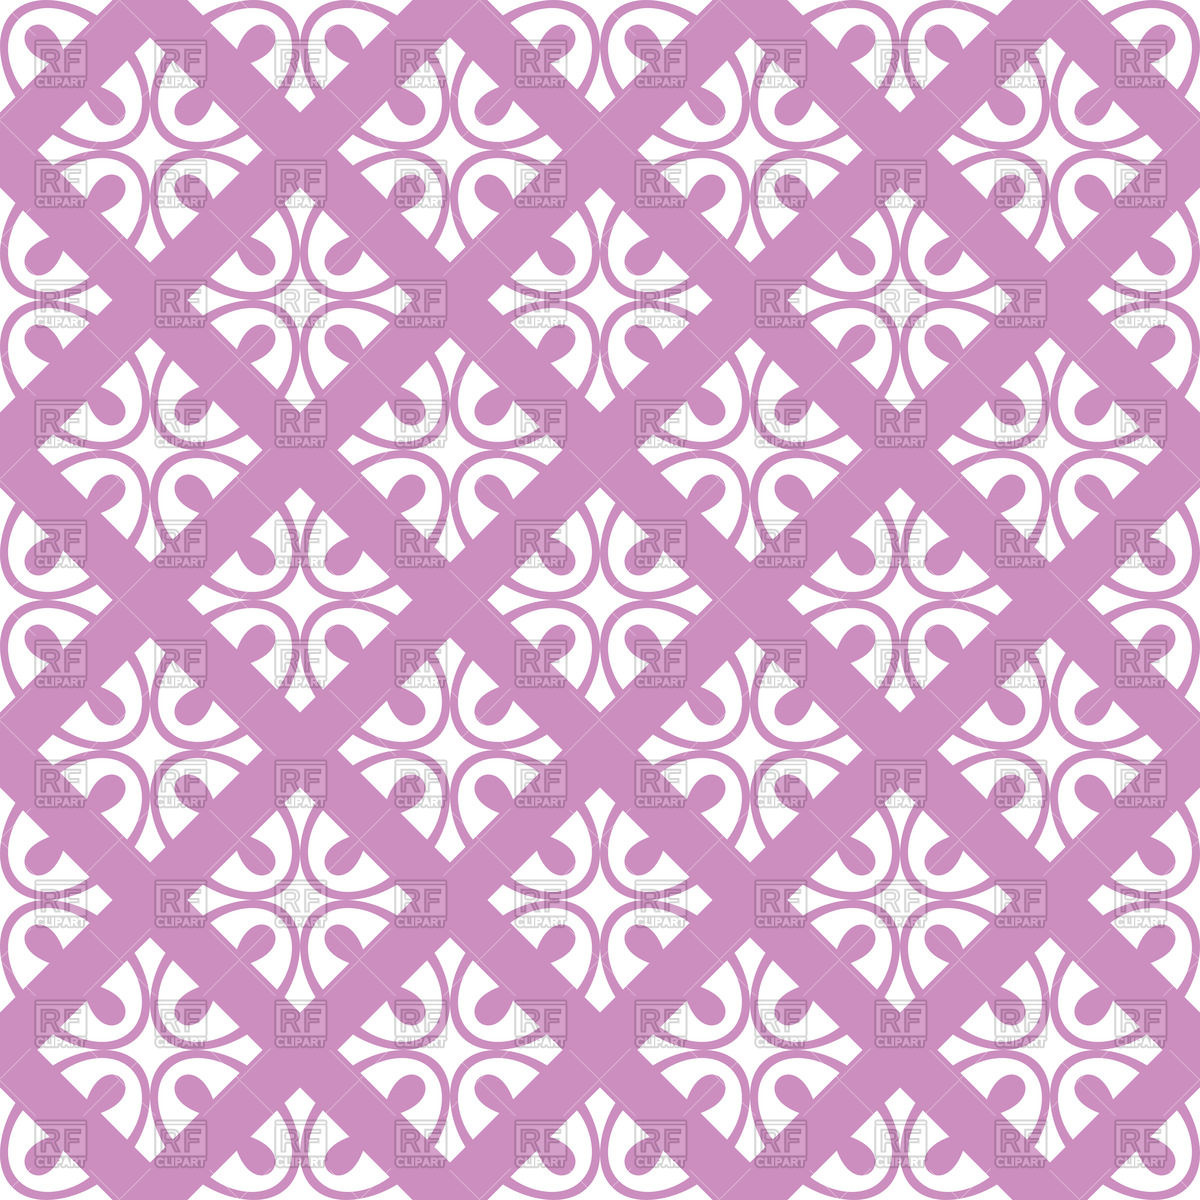 Violet seamless floral ornate wallpaper Vector Image #47245.